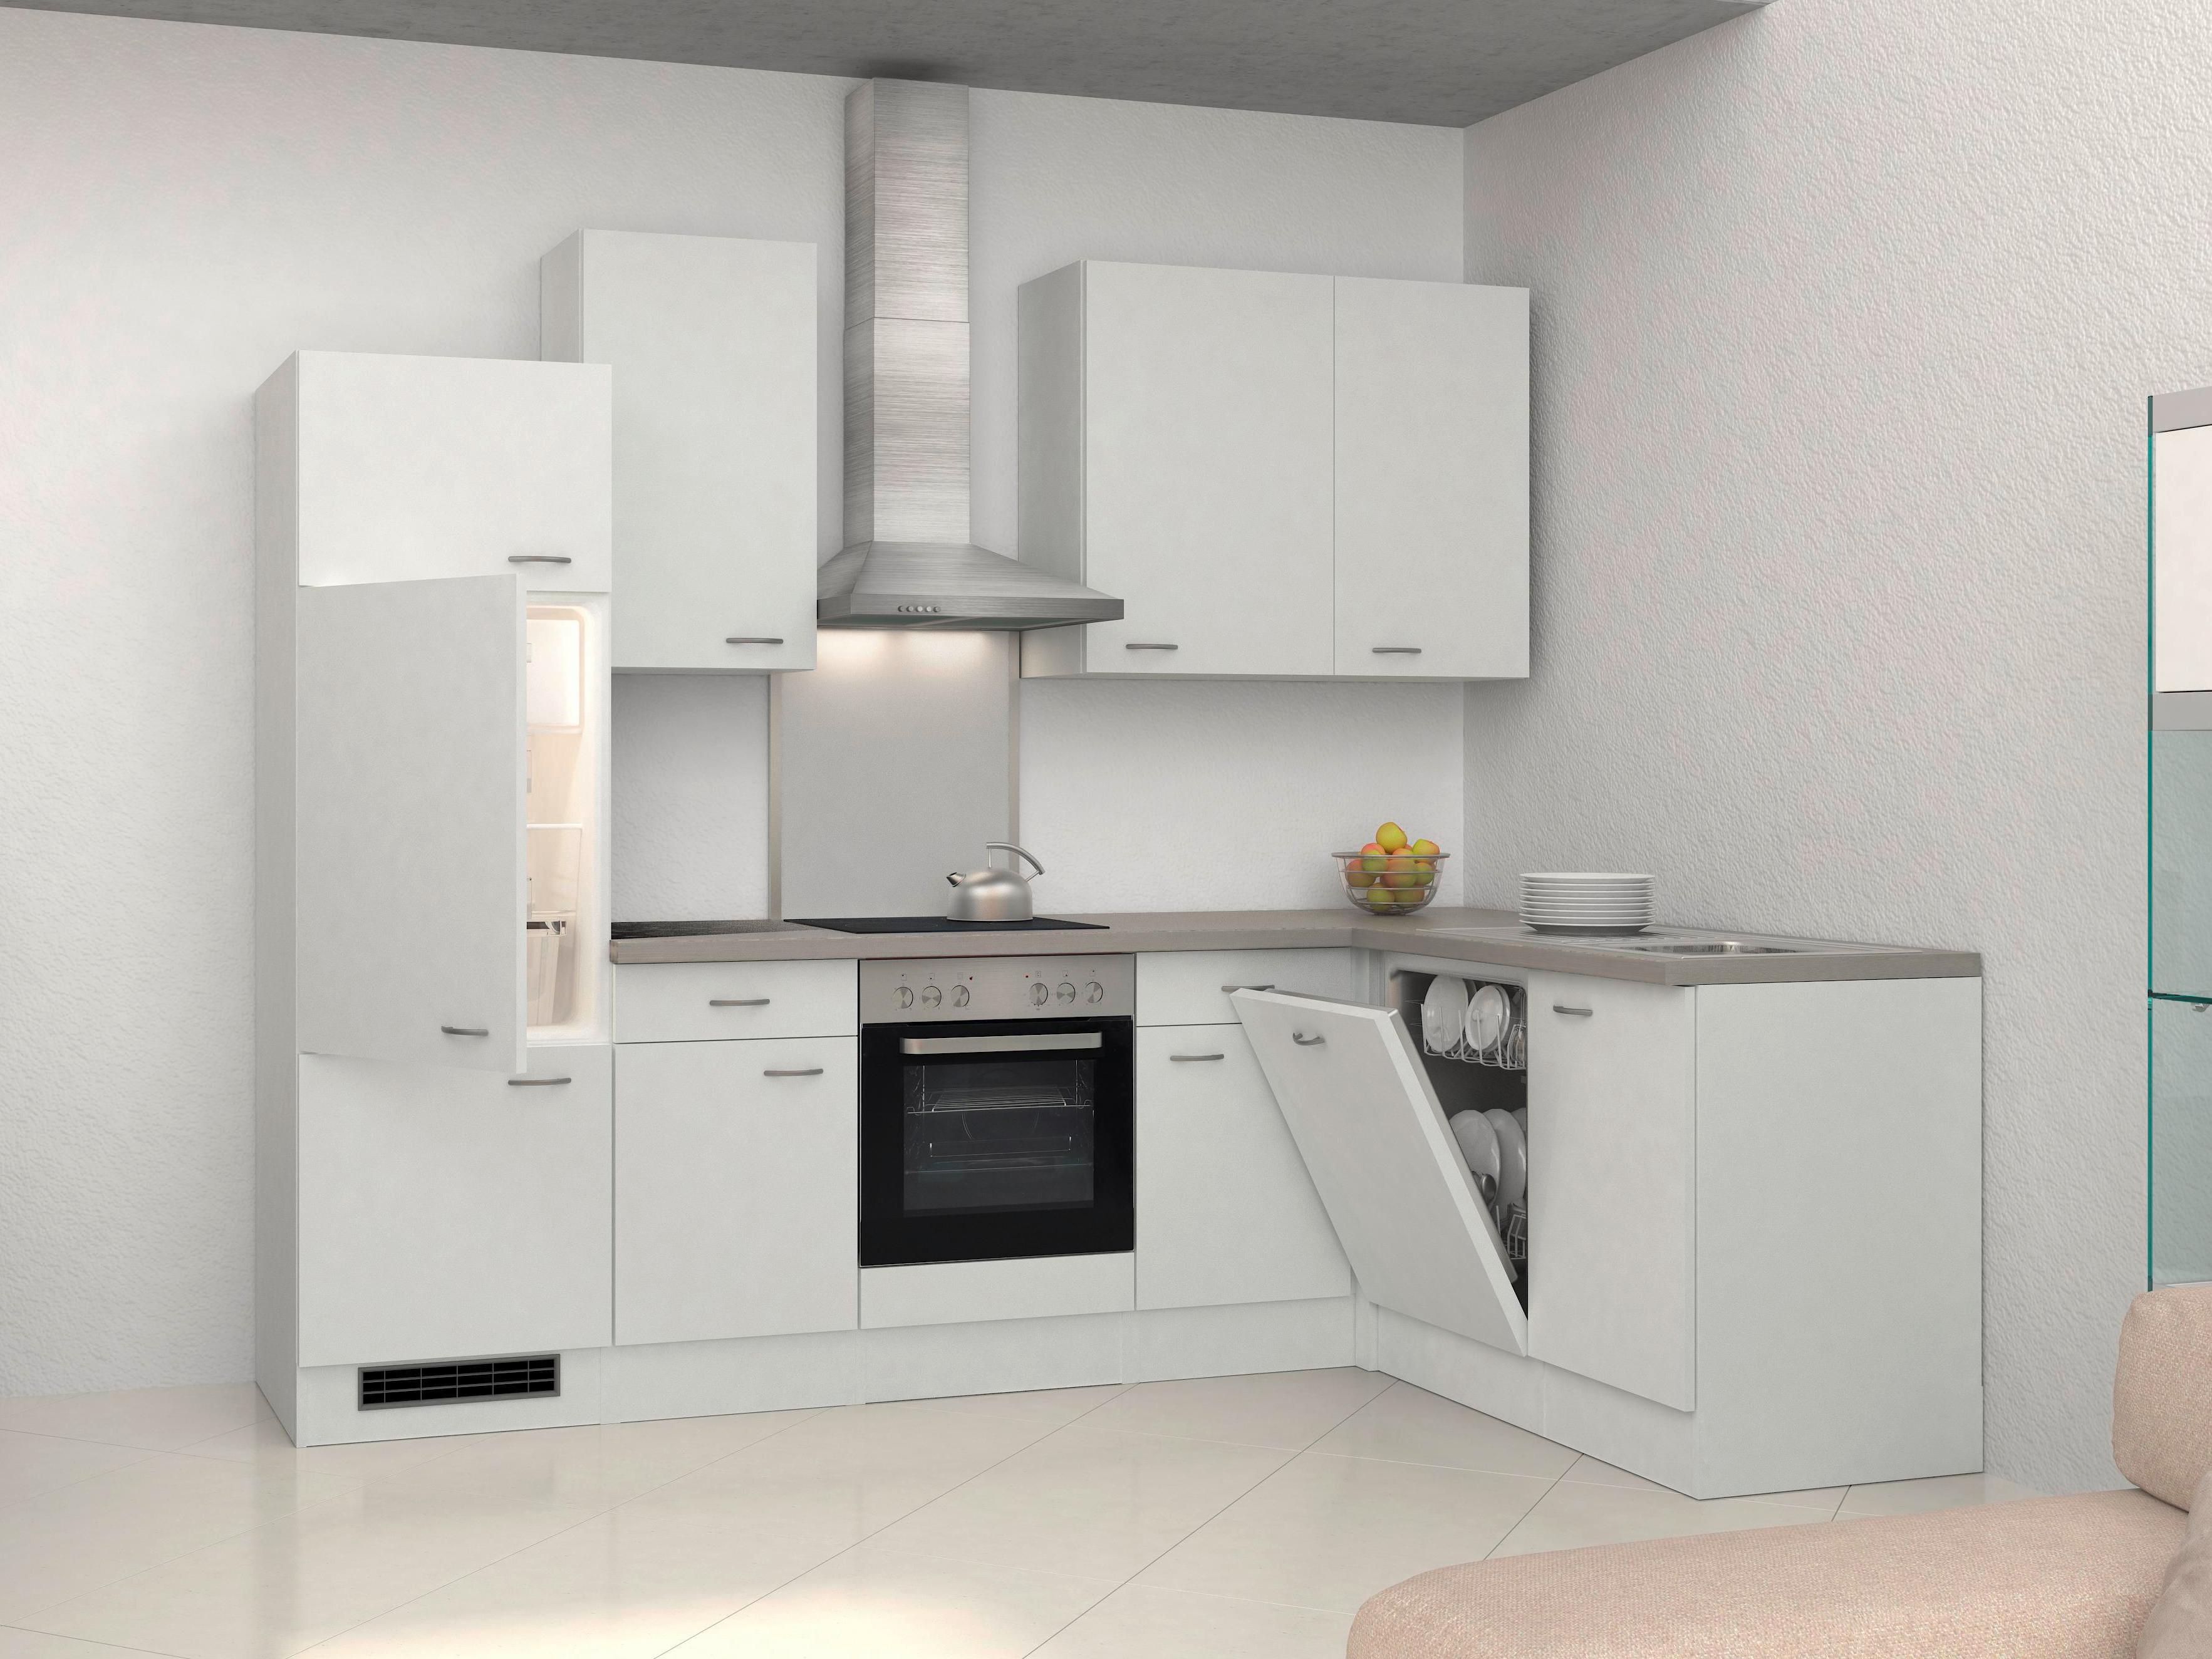 Winkelküche mit Geräten Küchenzeile L Form Eckküche Einbauküche 280x170 cm weiss